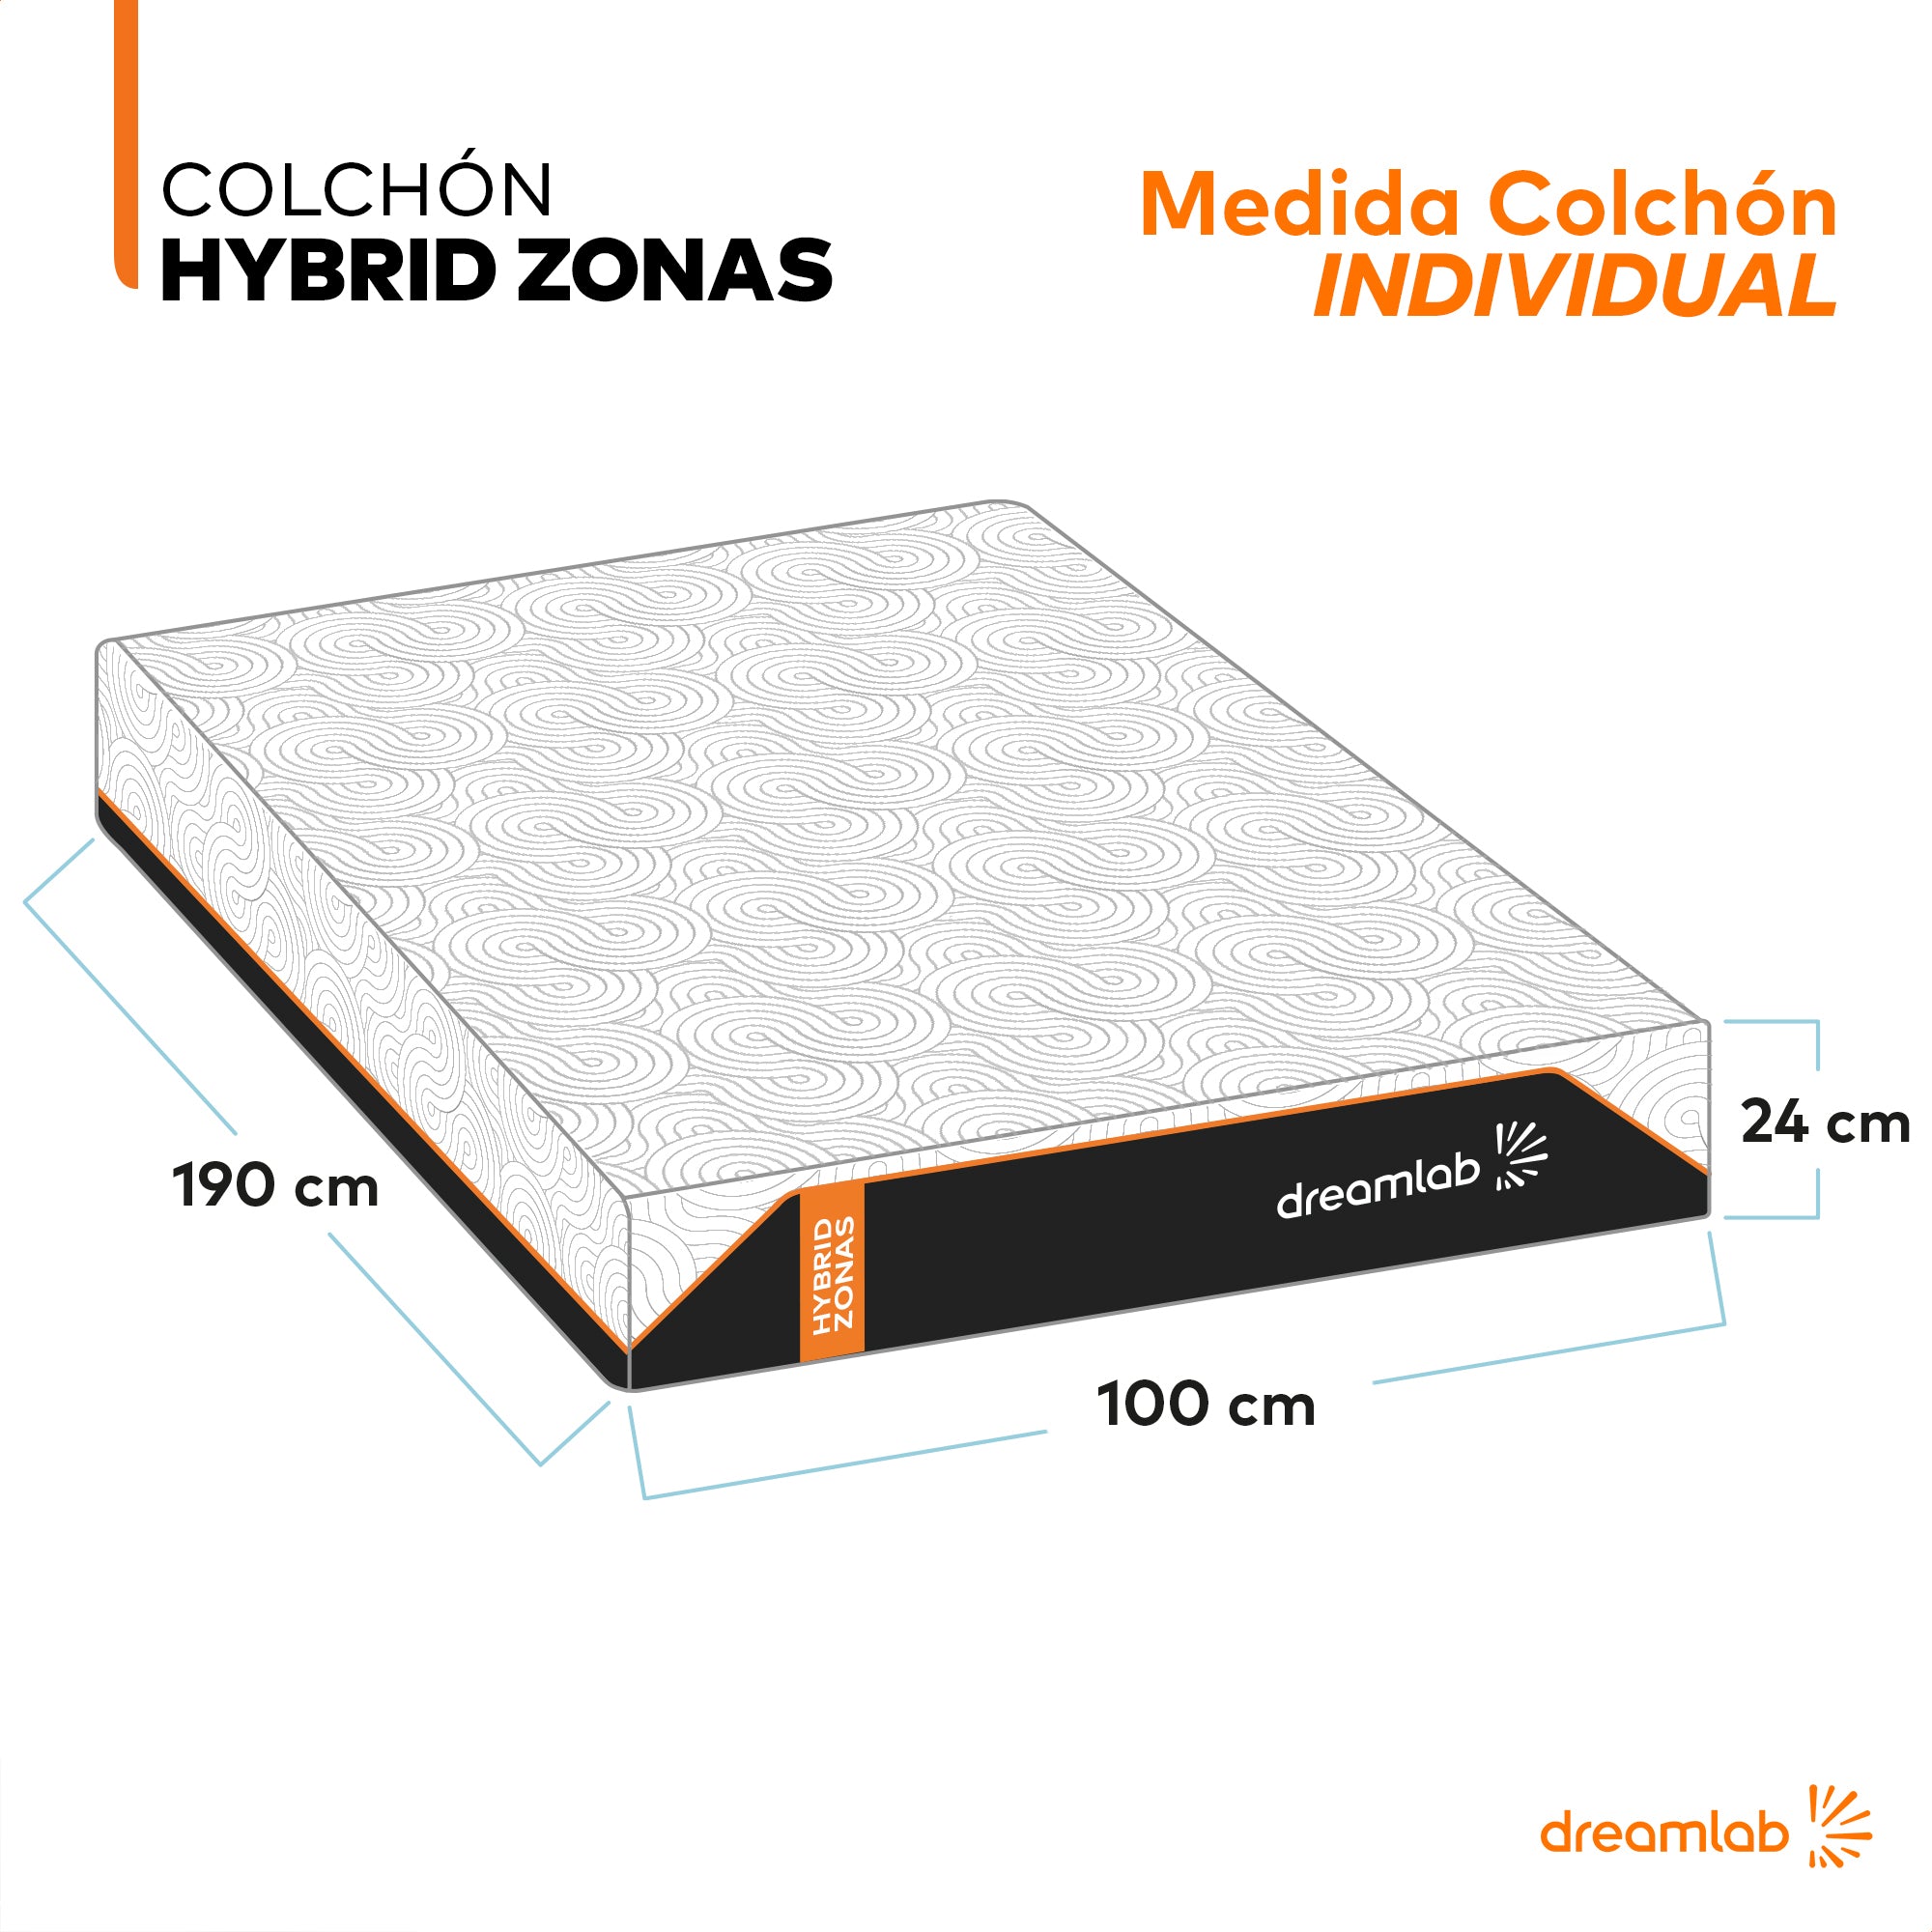 Colchón Hybrid Zonas